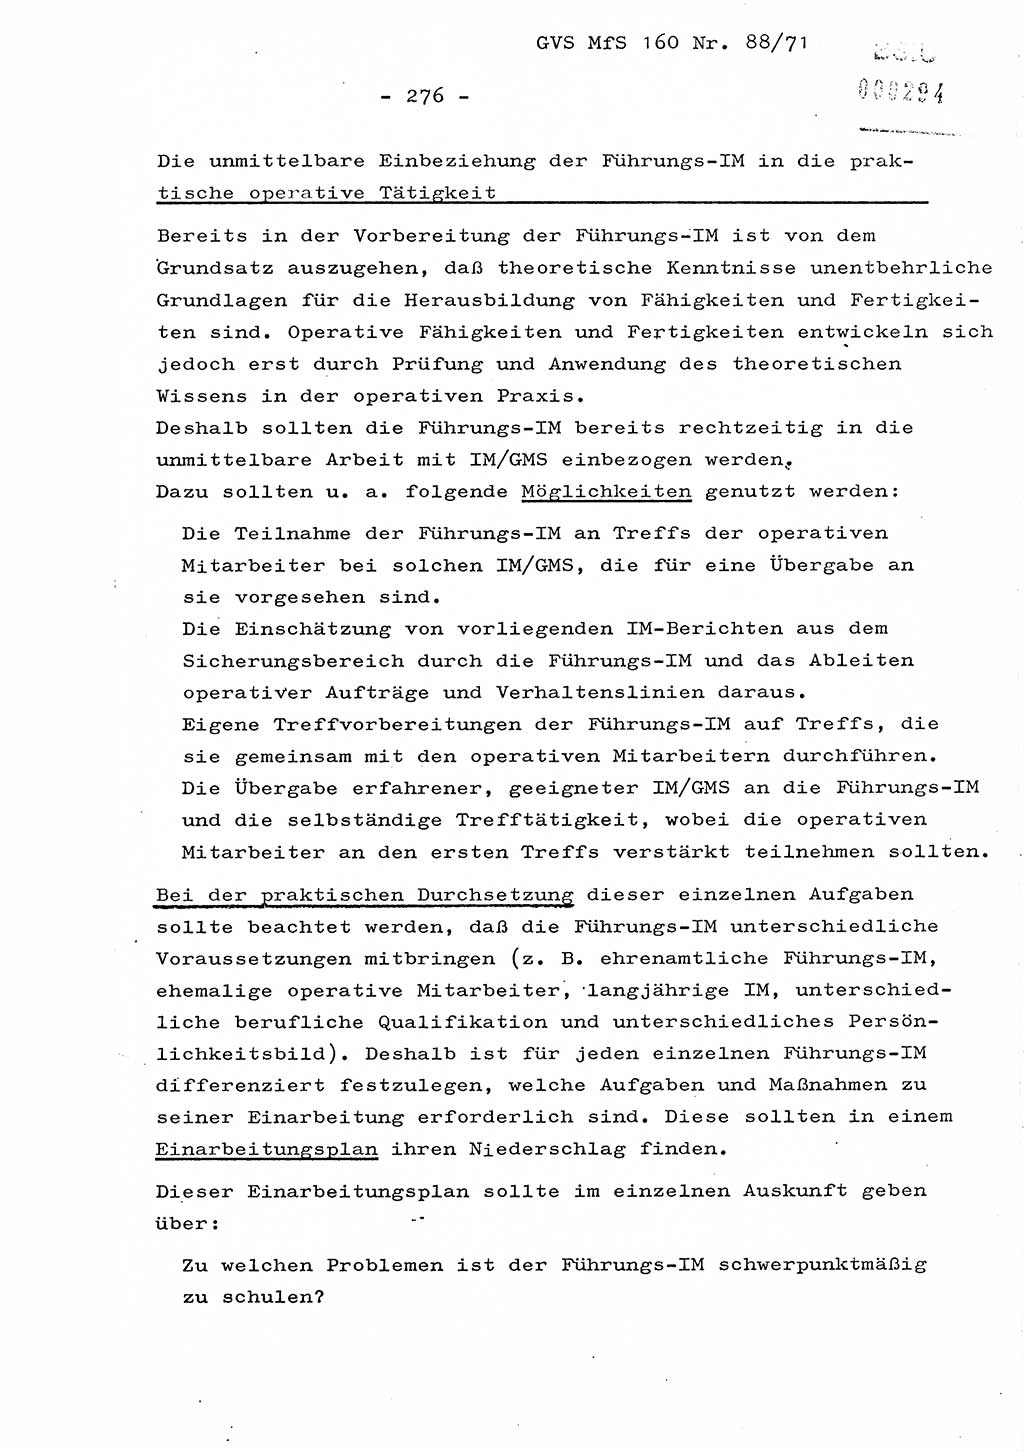 Dissertation Oberstleutnant Josef Schwarz (BV Schwerin), Major Fritz Amm (JHS), Hauptmann Peter Gräßler (JHS), Ministerium für Staatssicherheit (MfS) [Deutsche Demokratische Republik (DDR)], Juristische Hochschule (JHS), Geheime Verschlußsache (GVS) 160-88/71, Potsdam 1972, Seite 276 (Diss. MfS DDR JHS GVS 160-88/71 1972, S. 276)